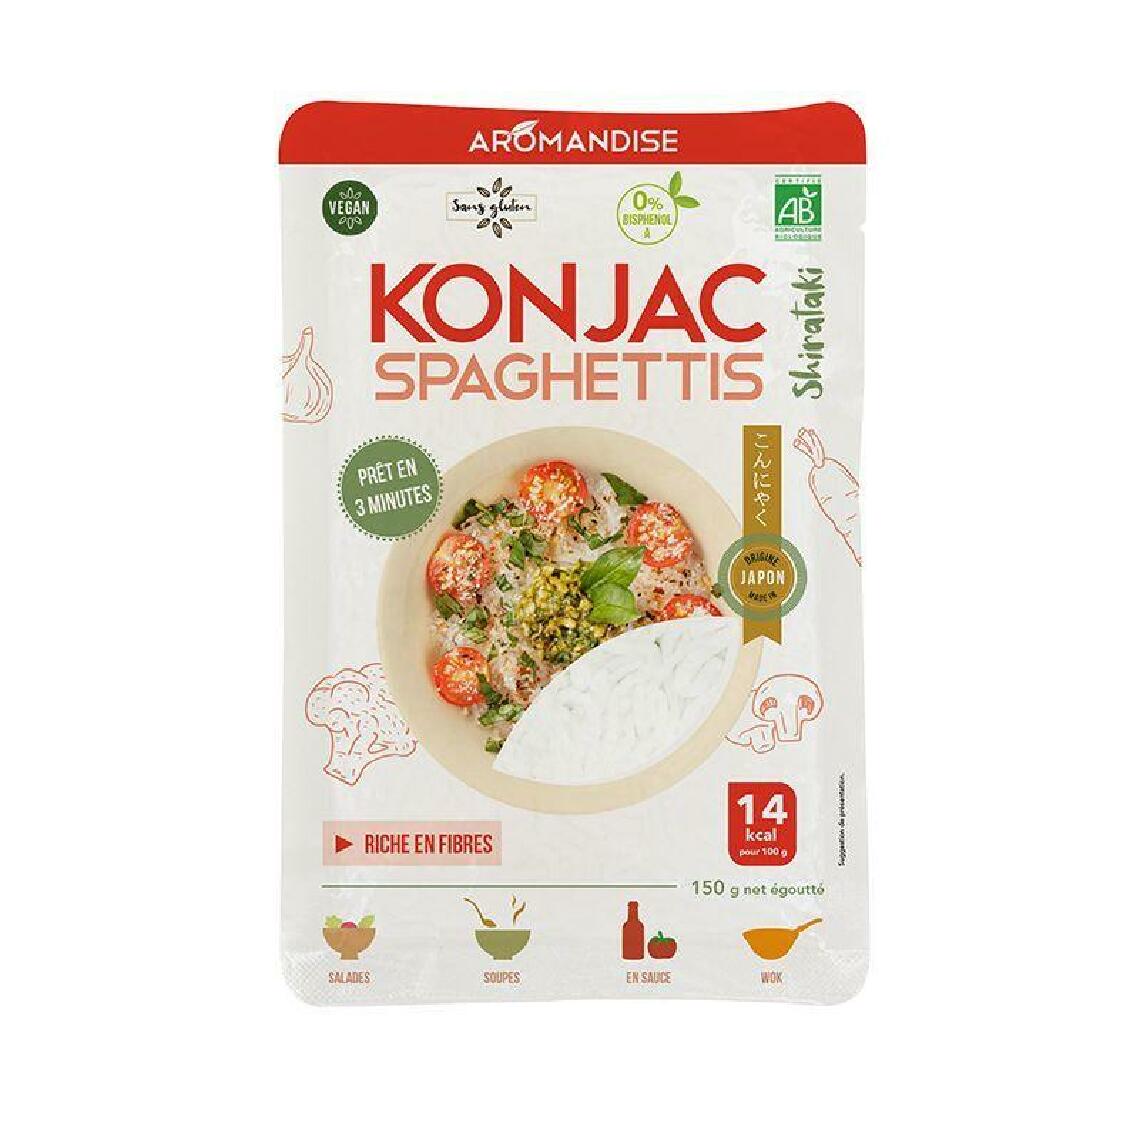 Aromandise - Spaghettis de Konjac - Kits créatifs